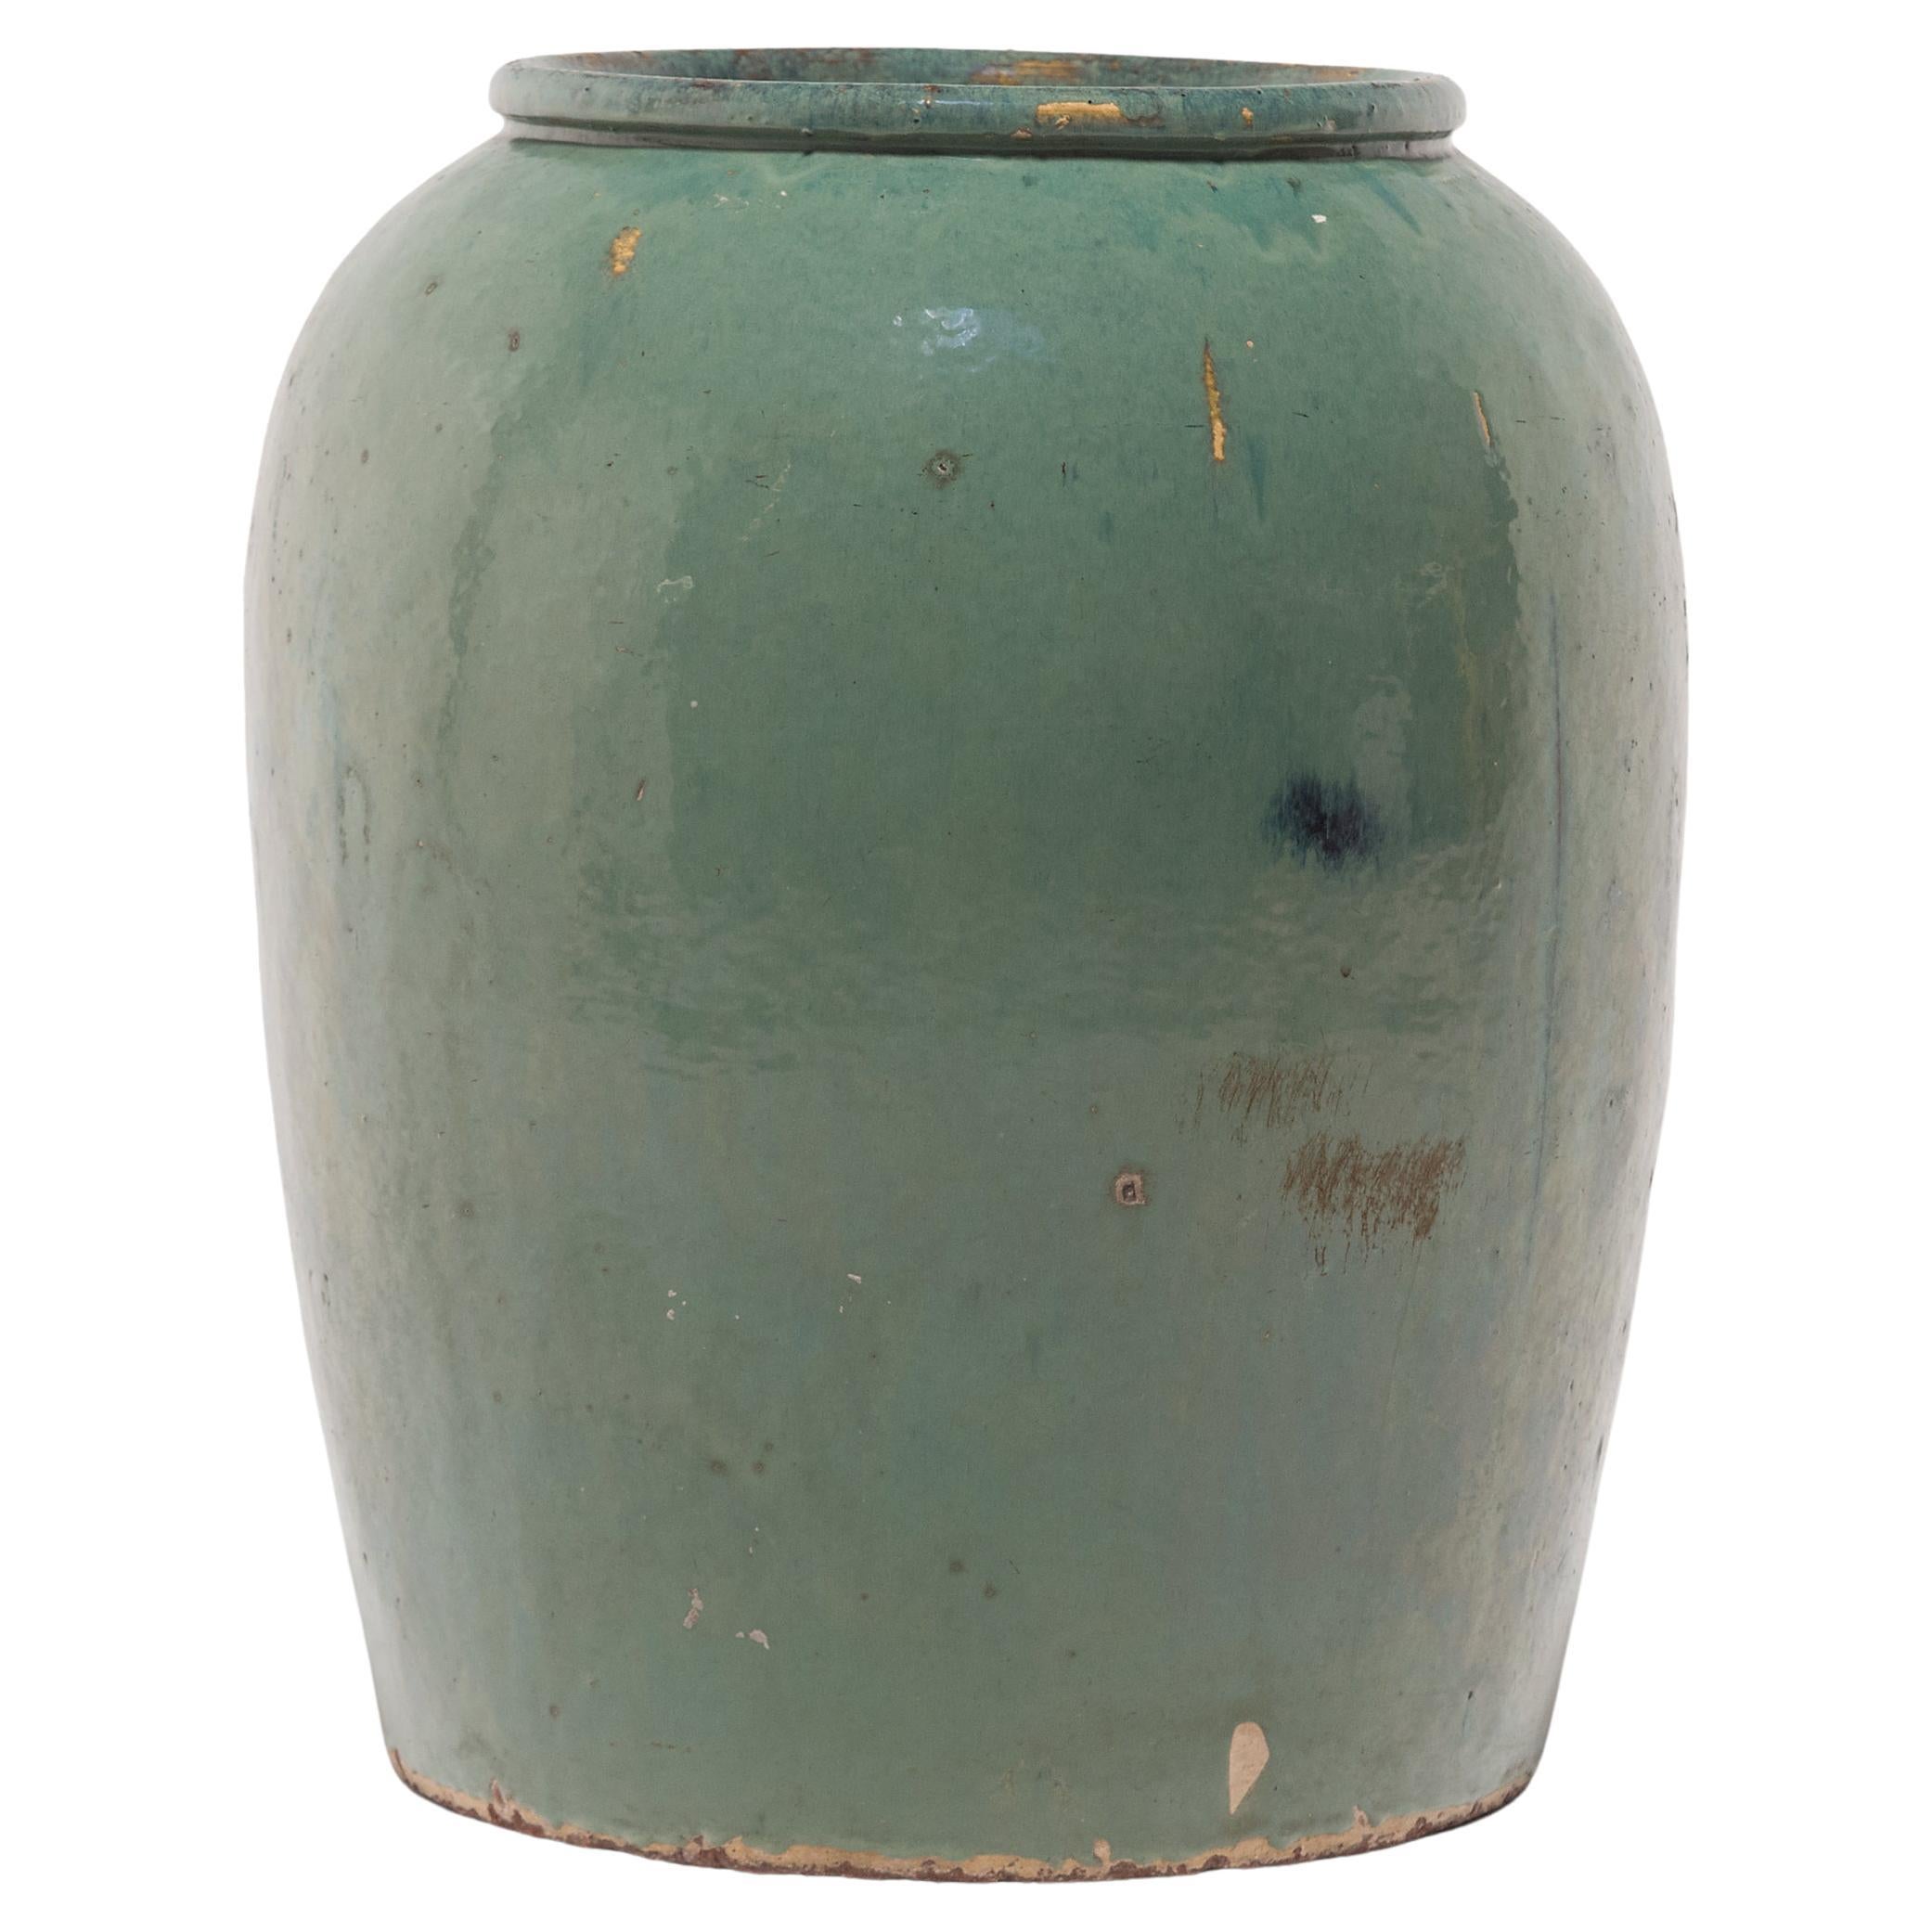 Chinese Celadon Pickling Jar, c. 1900